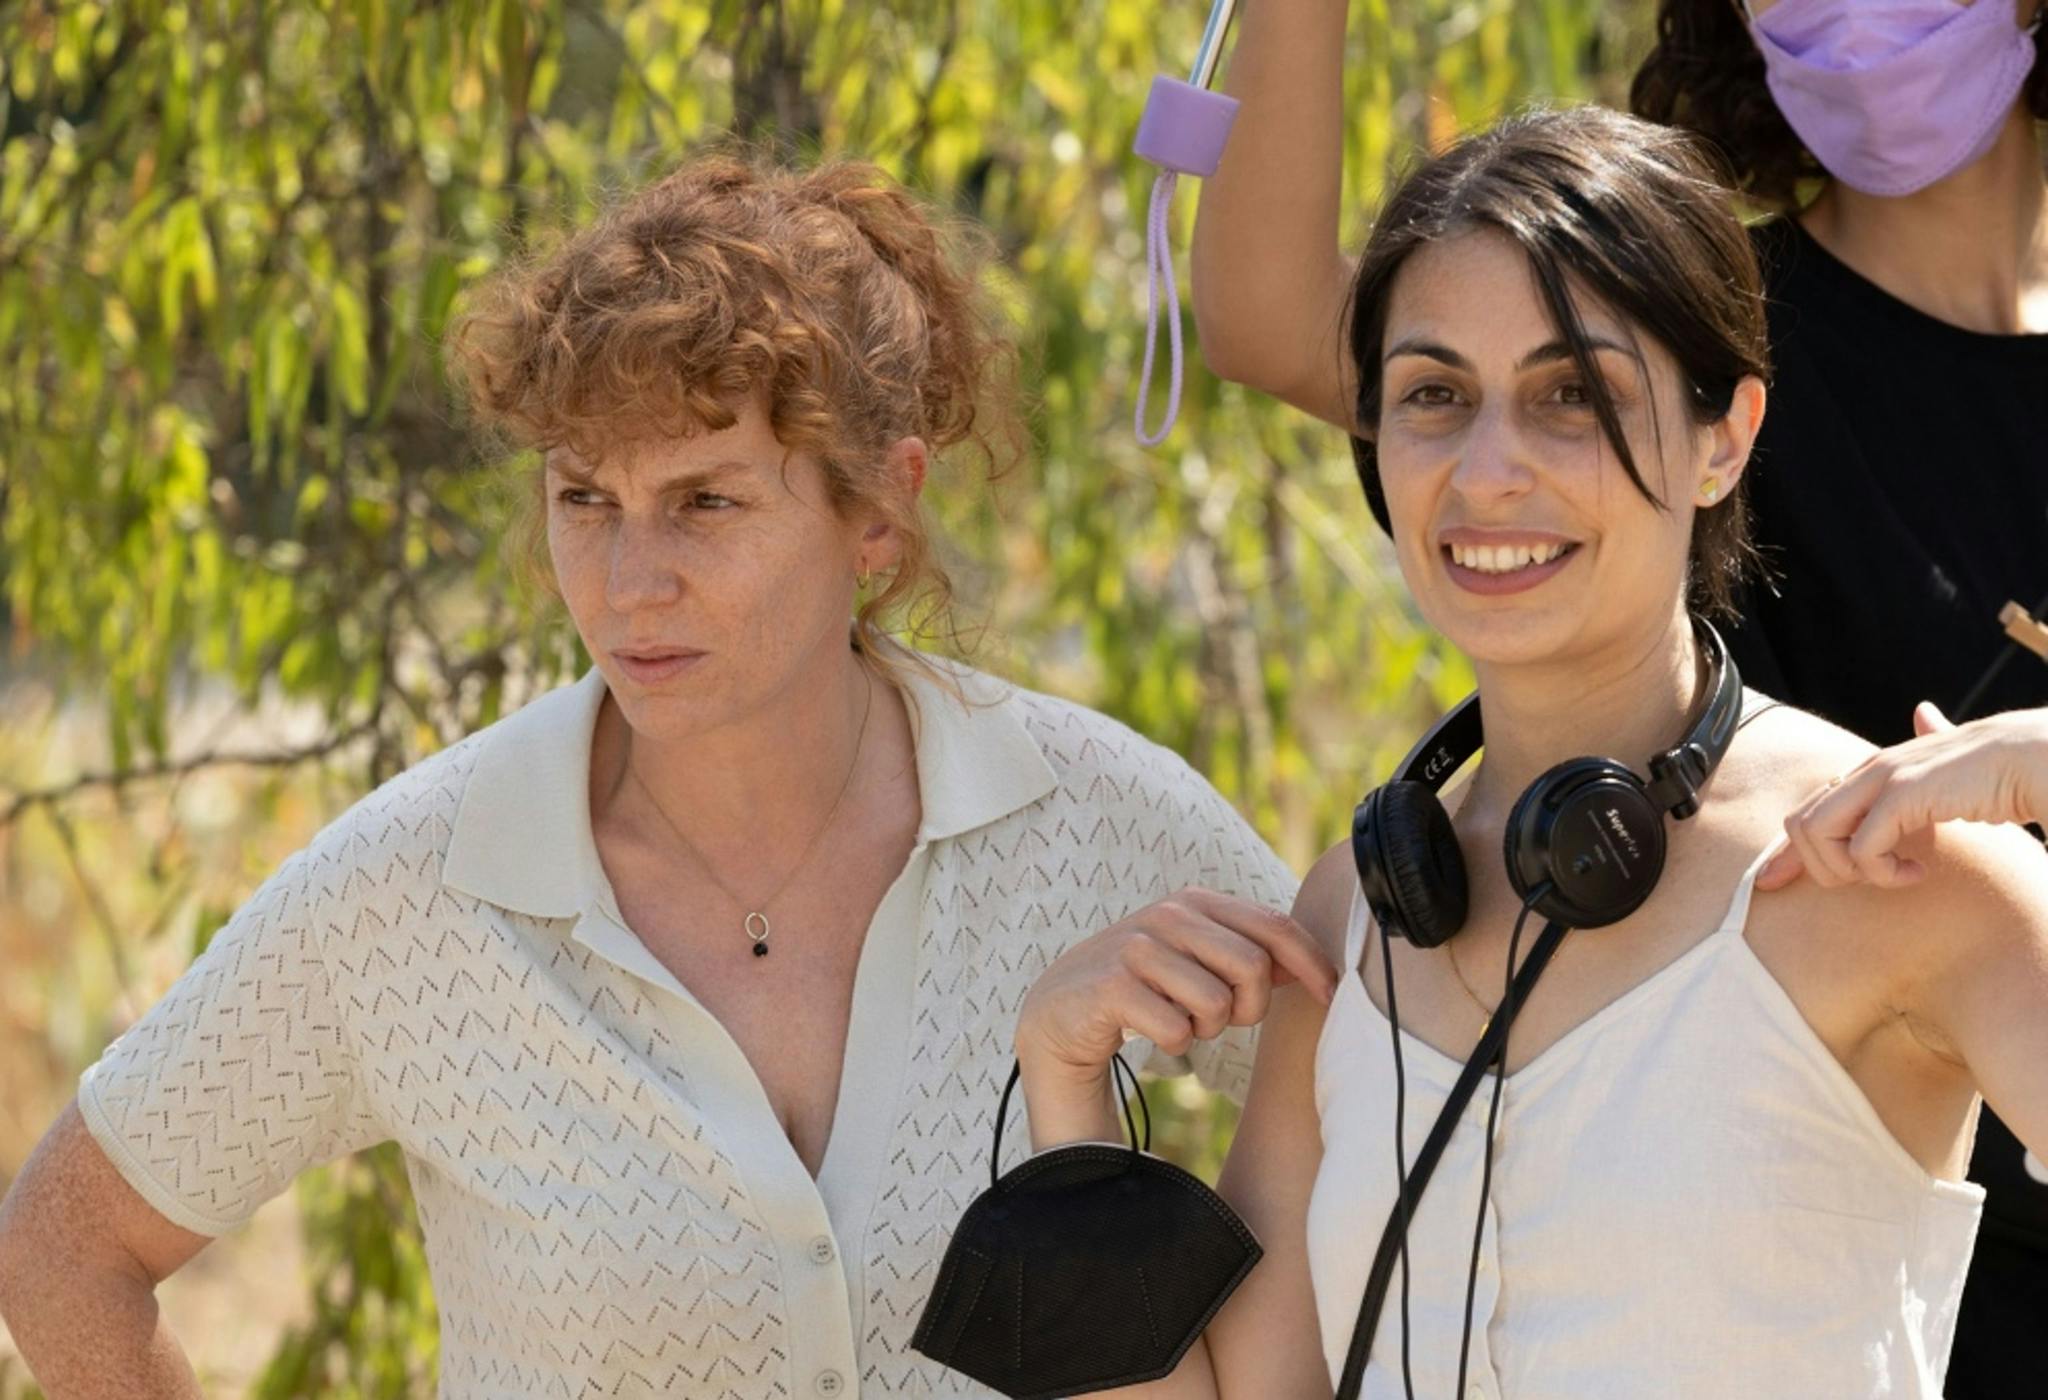 Celia Rico estrenará en 2023 su segunda película como directora, 'Los pequeños amores'